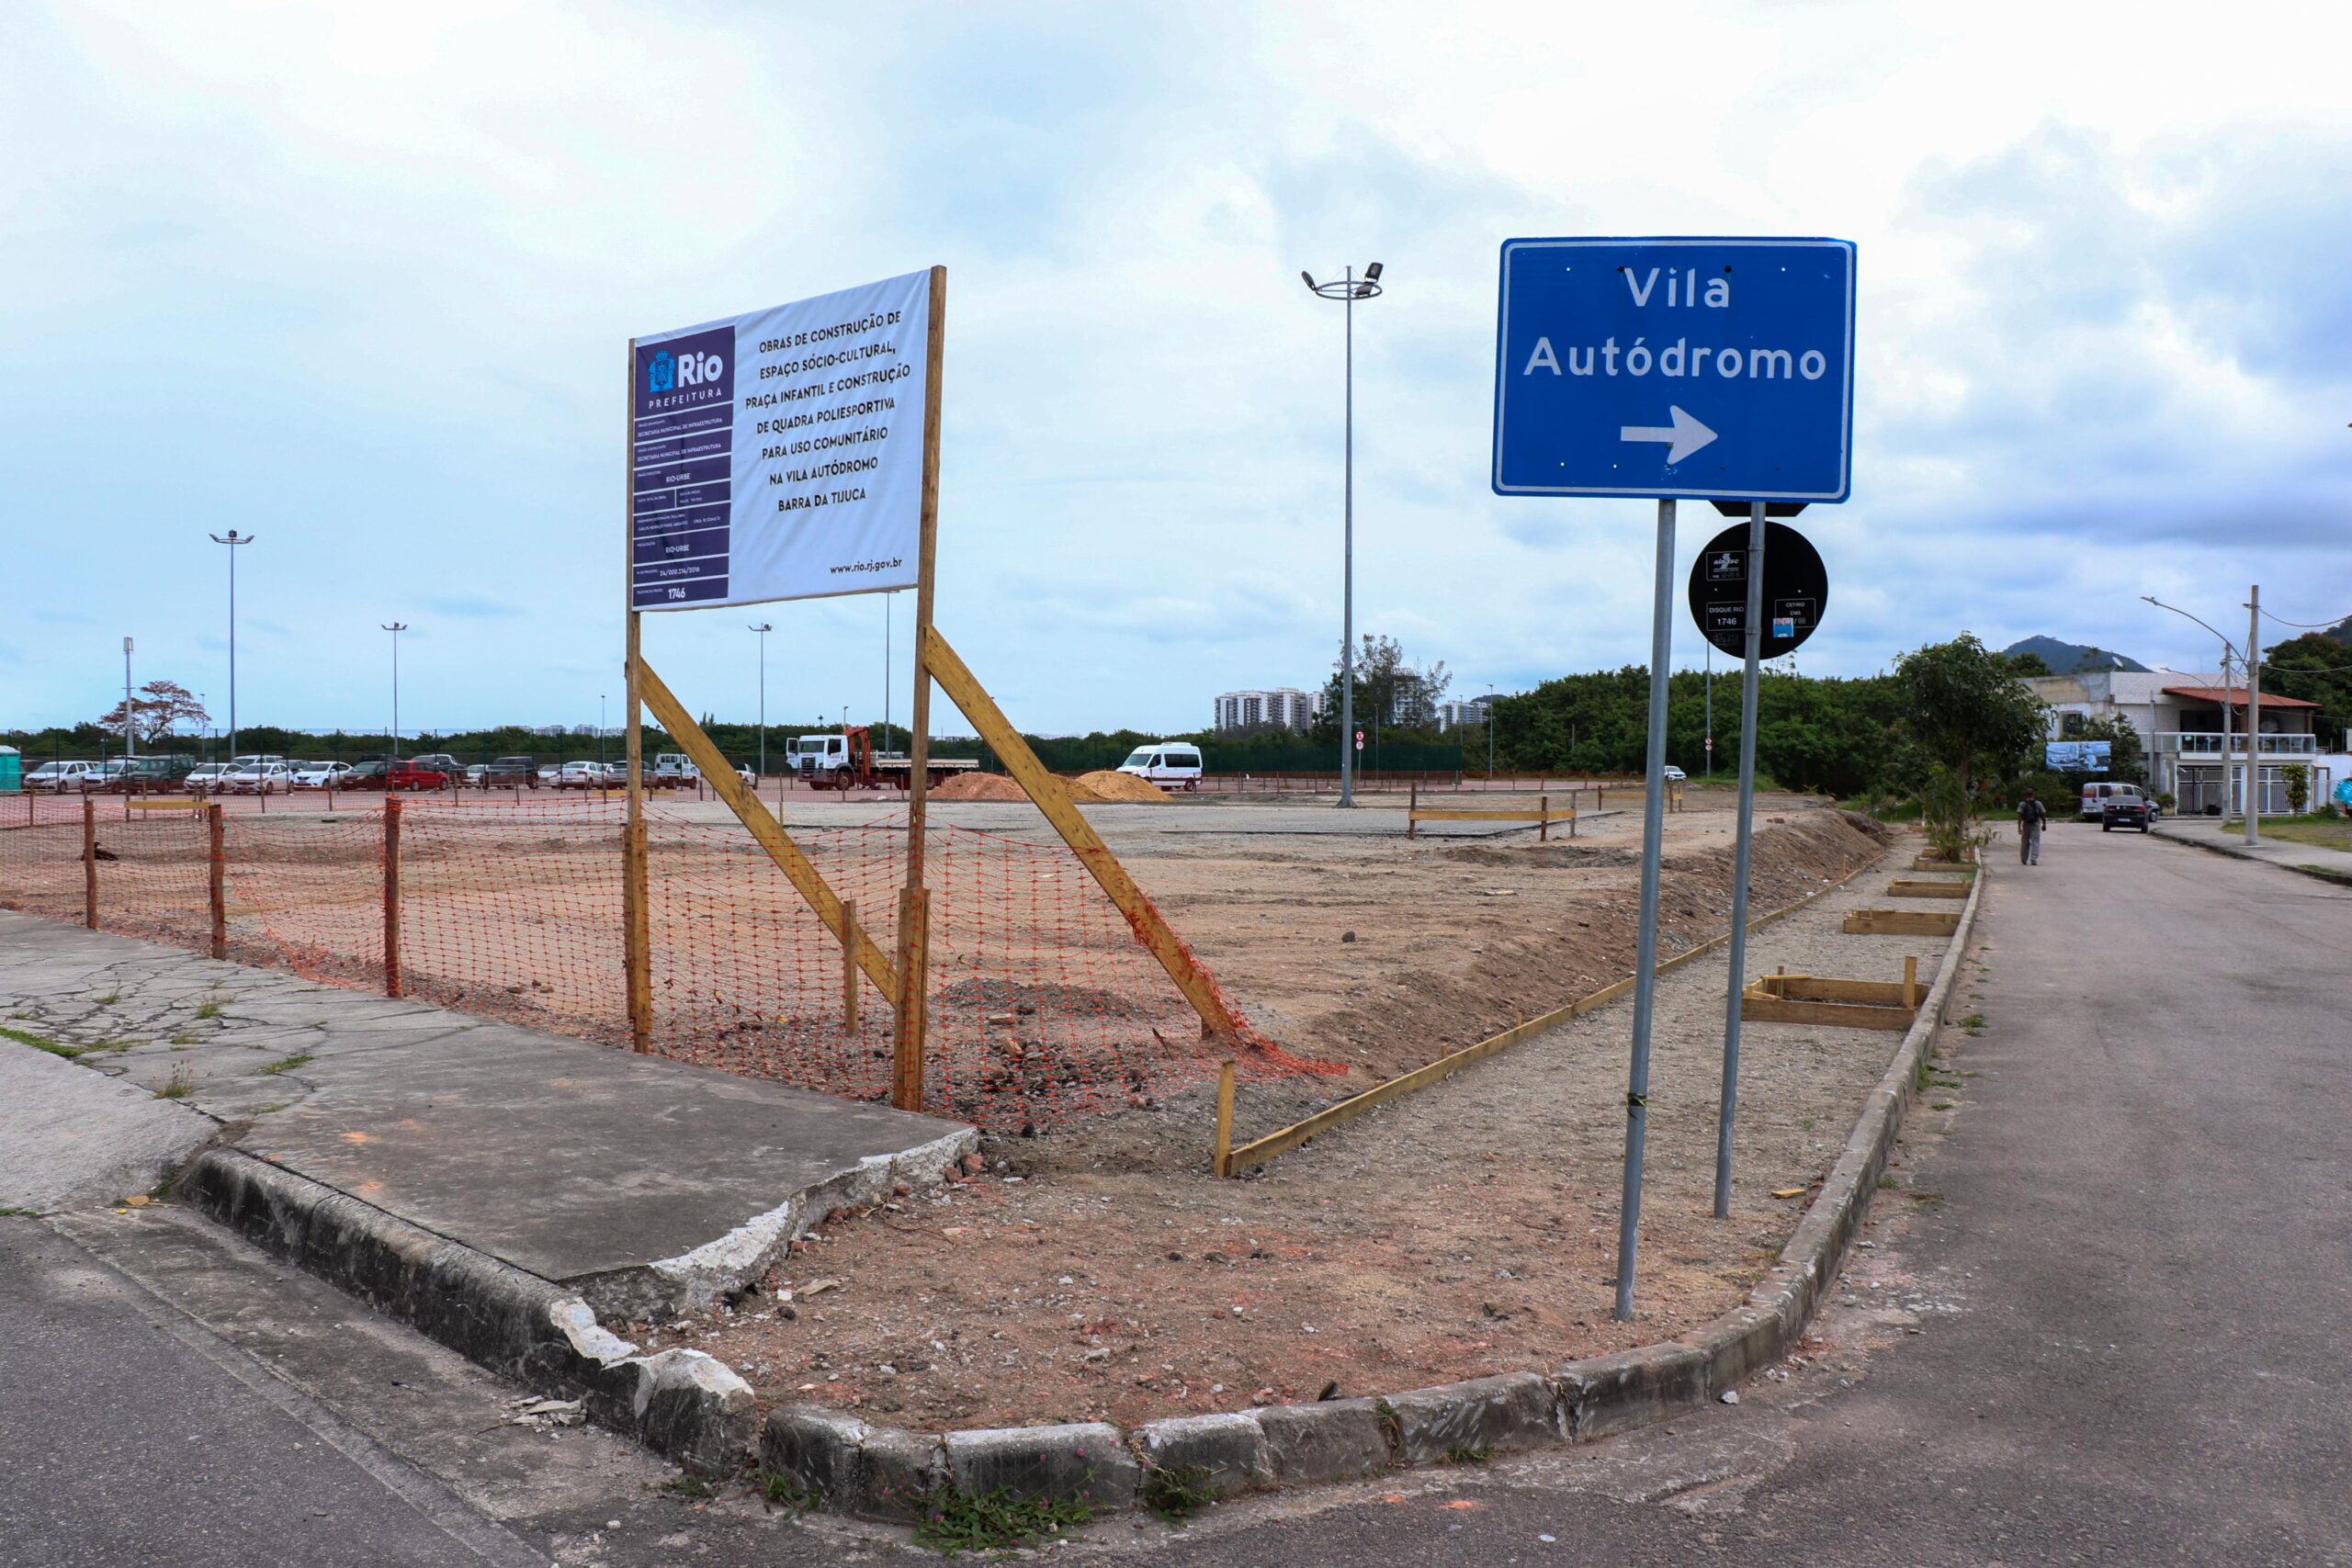 Placa das obras que estão sendo realizadas na comunidade da Vila Autódromo. Foto: Alexandre Cerqueira